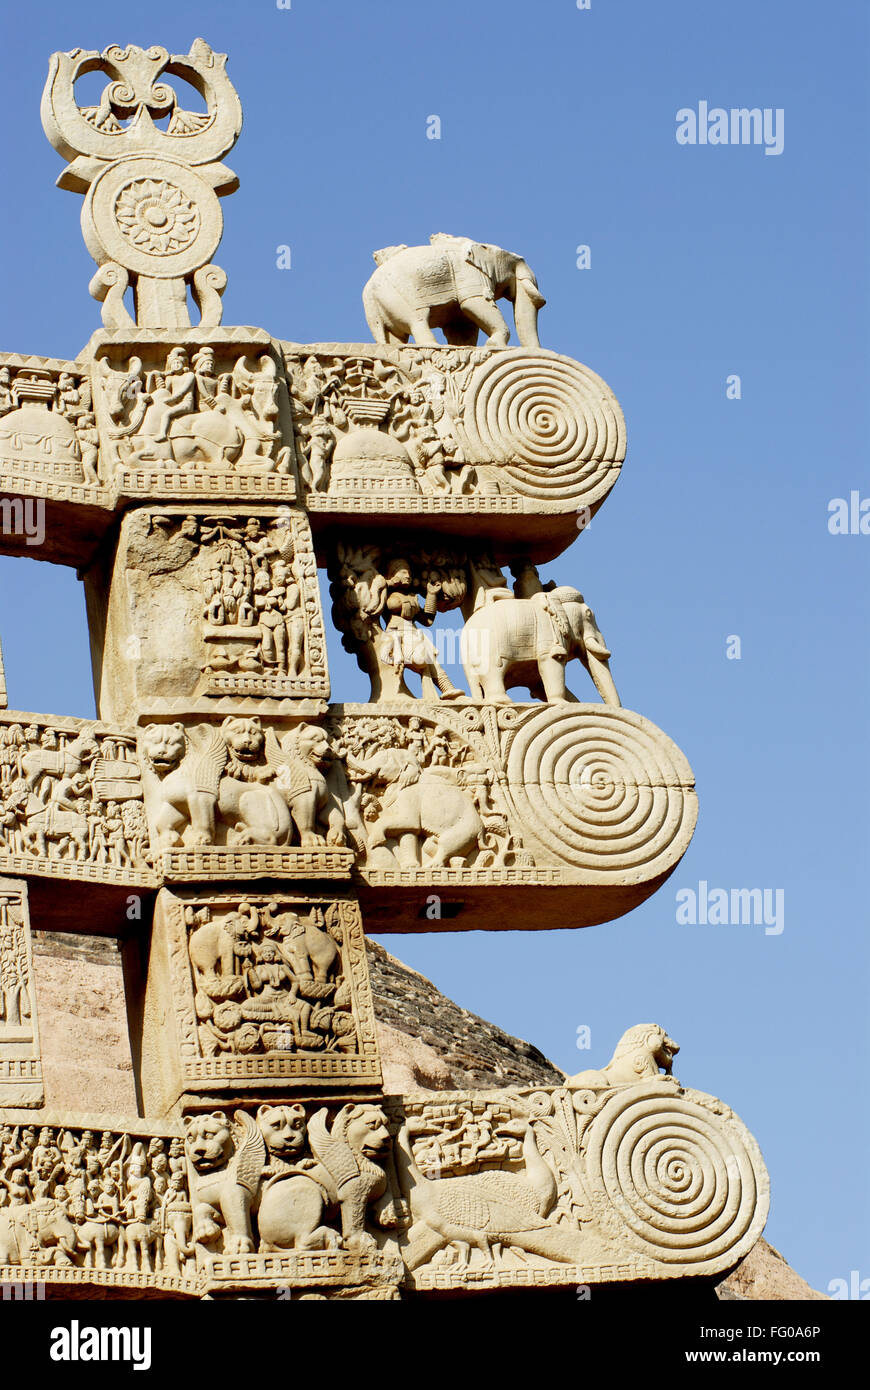 Süd-Gateway oder Torna Maha Stupa Nr. 1 mit Darstellung der Geschichten Gravieren Dekorationen errichtet Sanchi Bhopal Madhya Pradesh Stockfoto